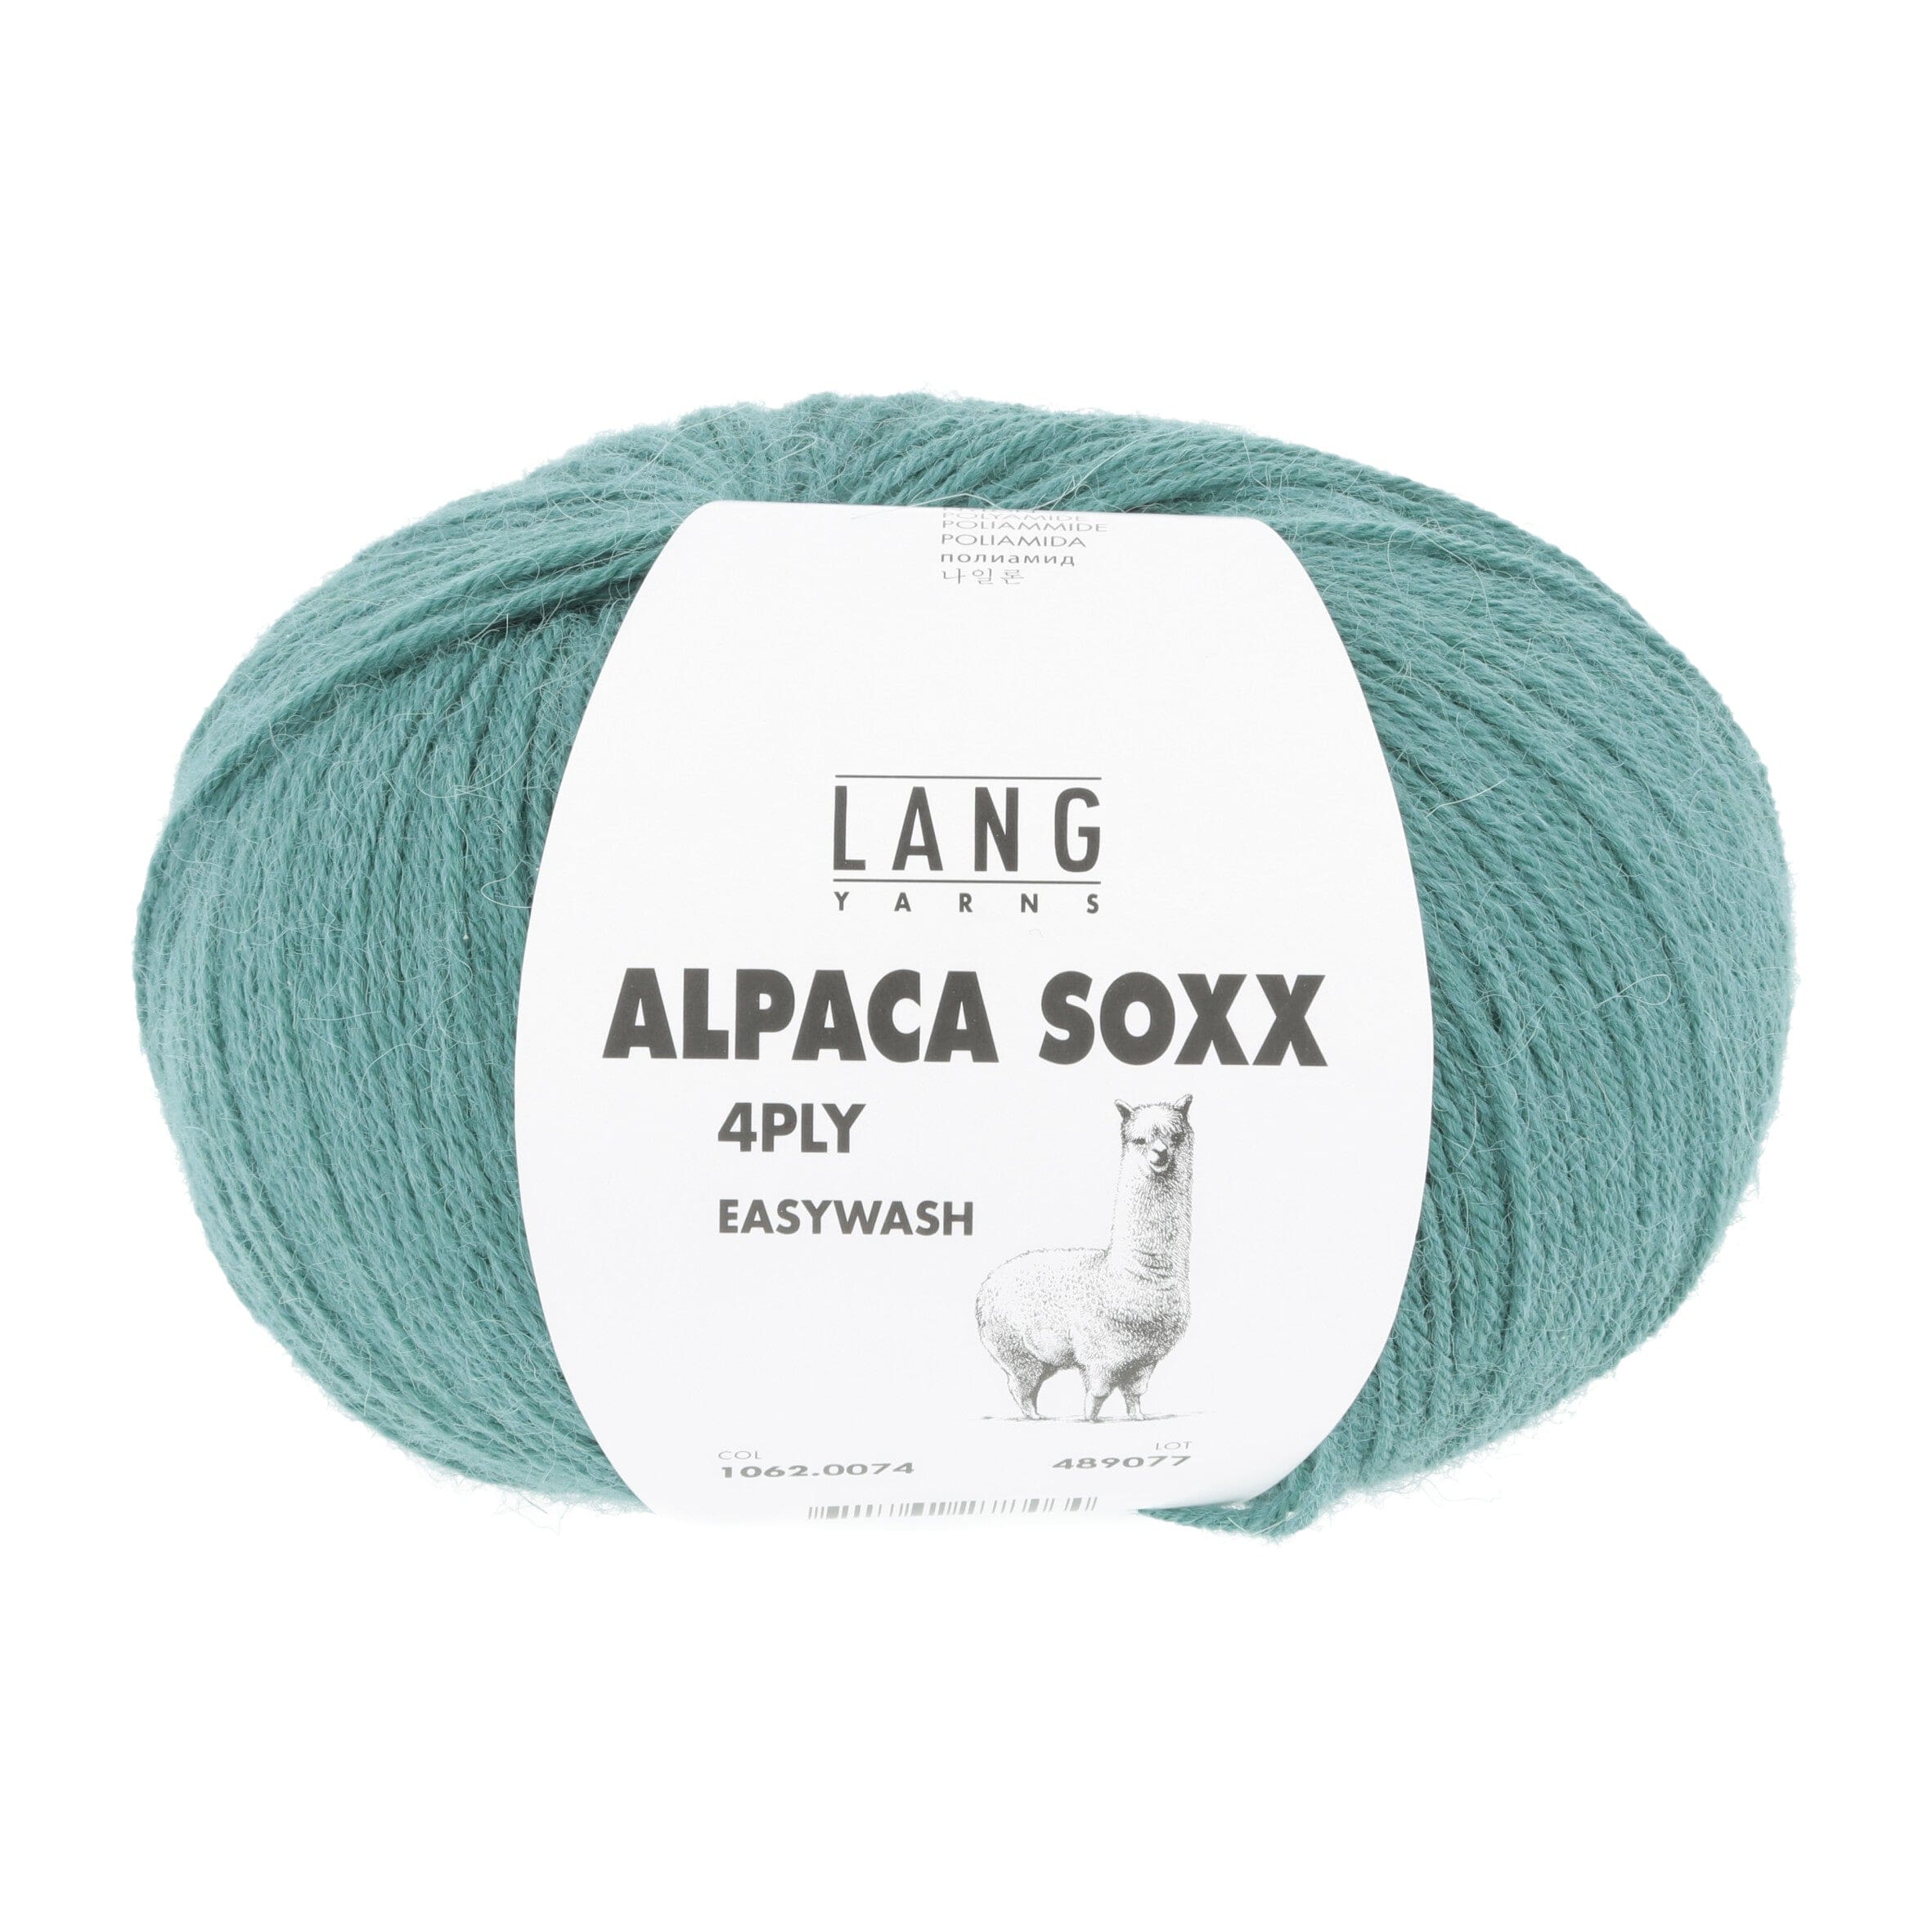 ALPACA SOXX 4-FACH/4-PLY von LANG YARNS jetzt online kaufen bei OONIQUE